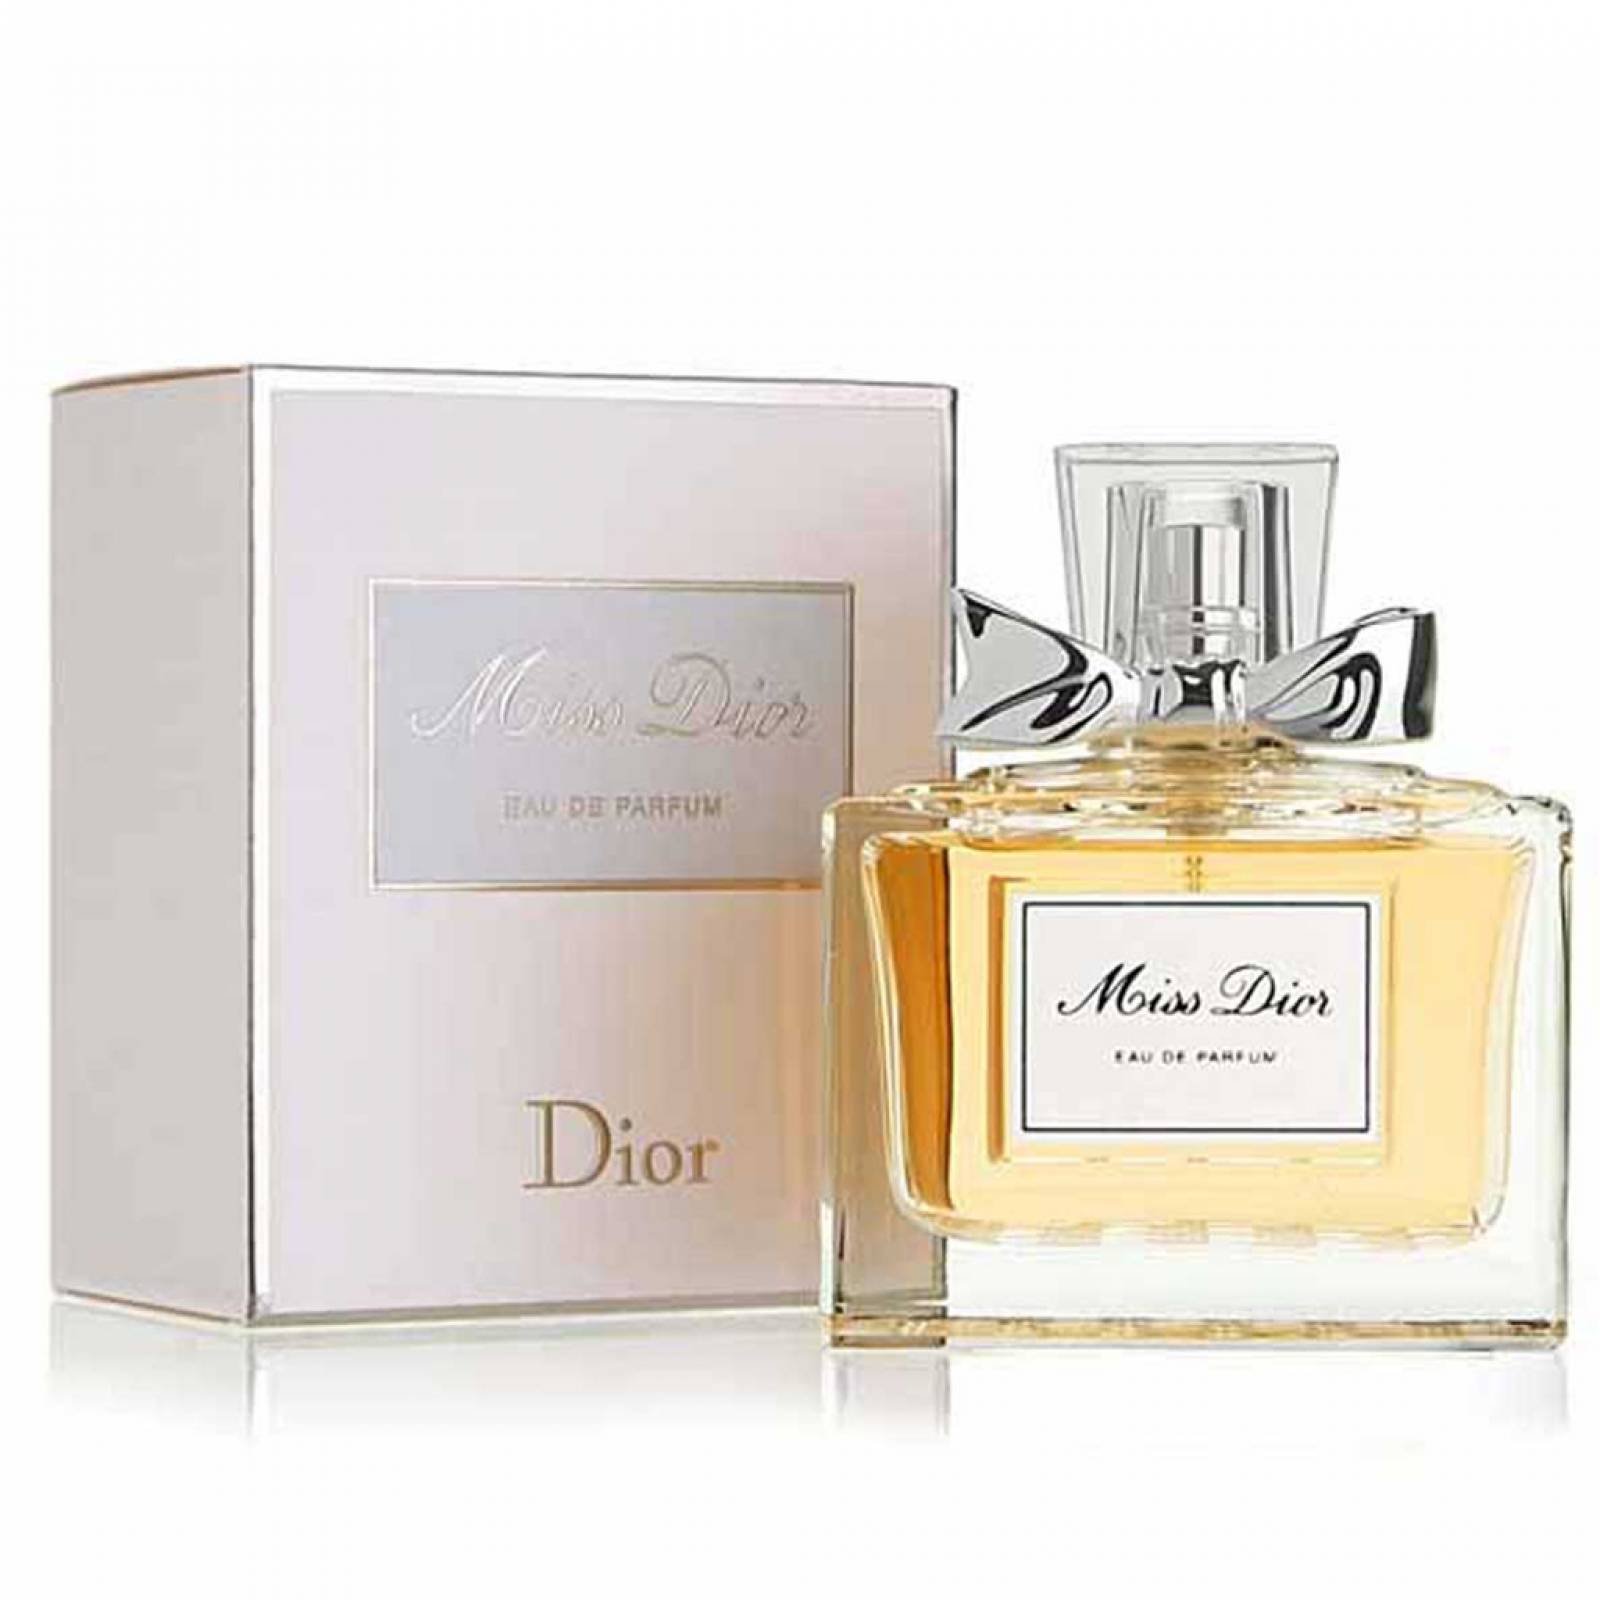 Miss Dior 150 ml Eau de Parfum Spray de Christian Dior Fragancia para Dama